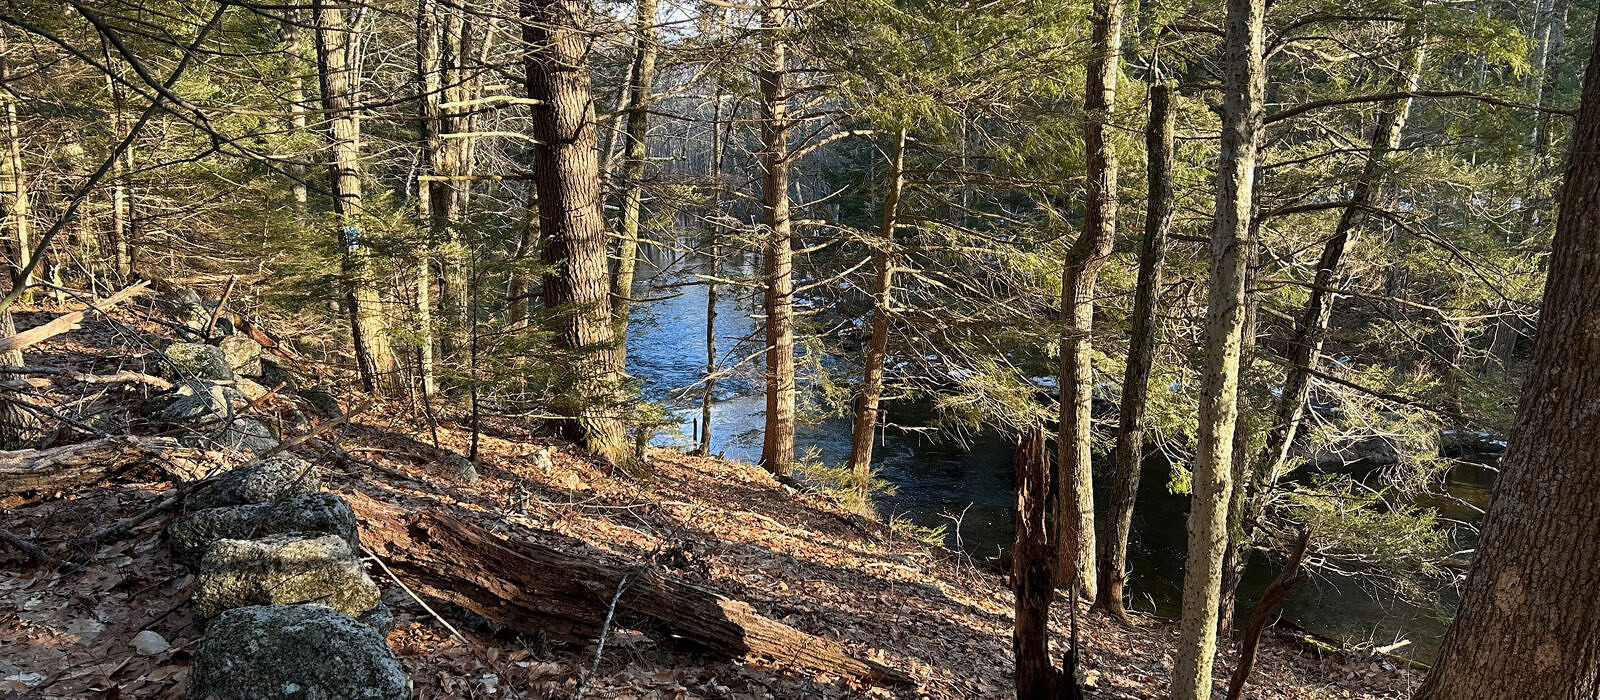 A scenic walking trail along Nubanusit Brook in Harrisville. (photo © Jeremy Wilson)